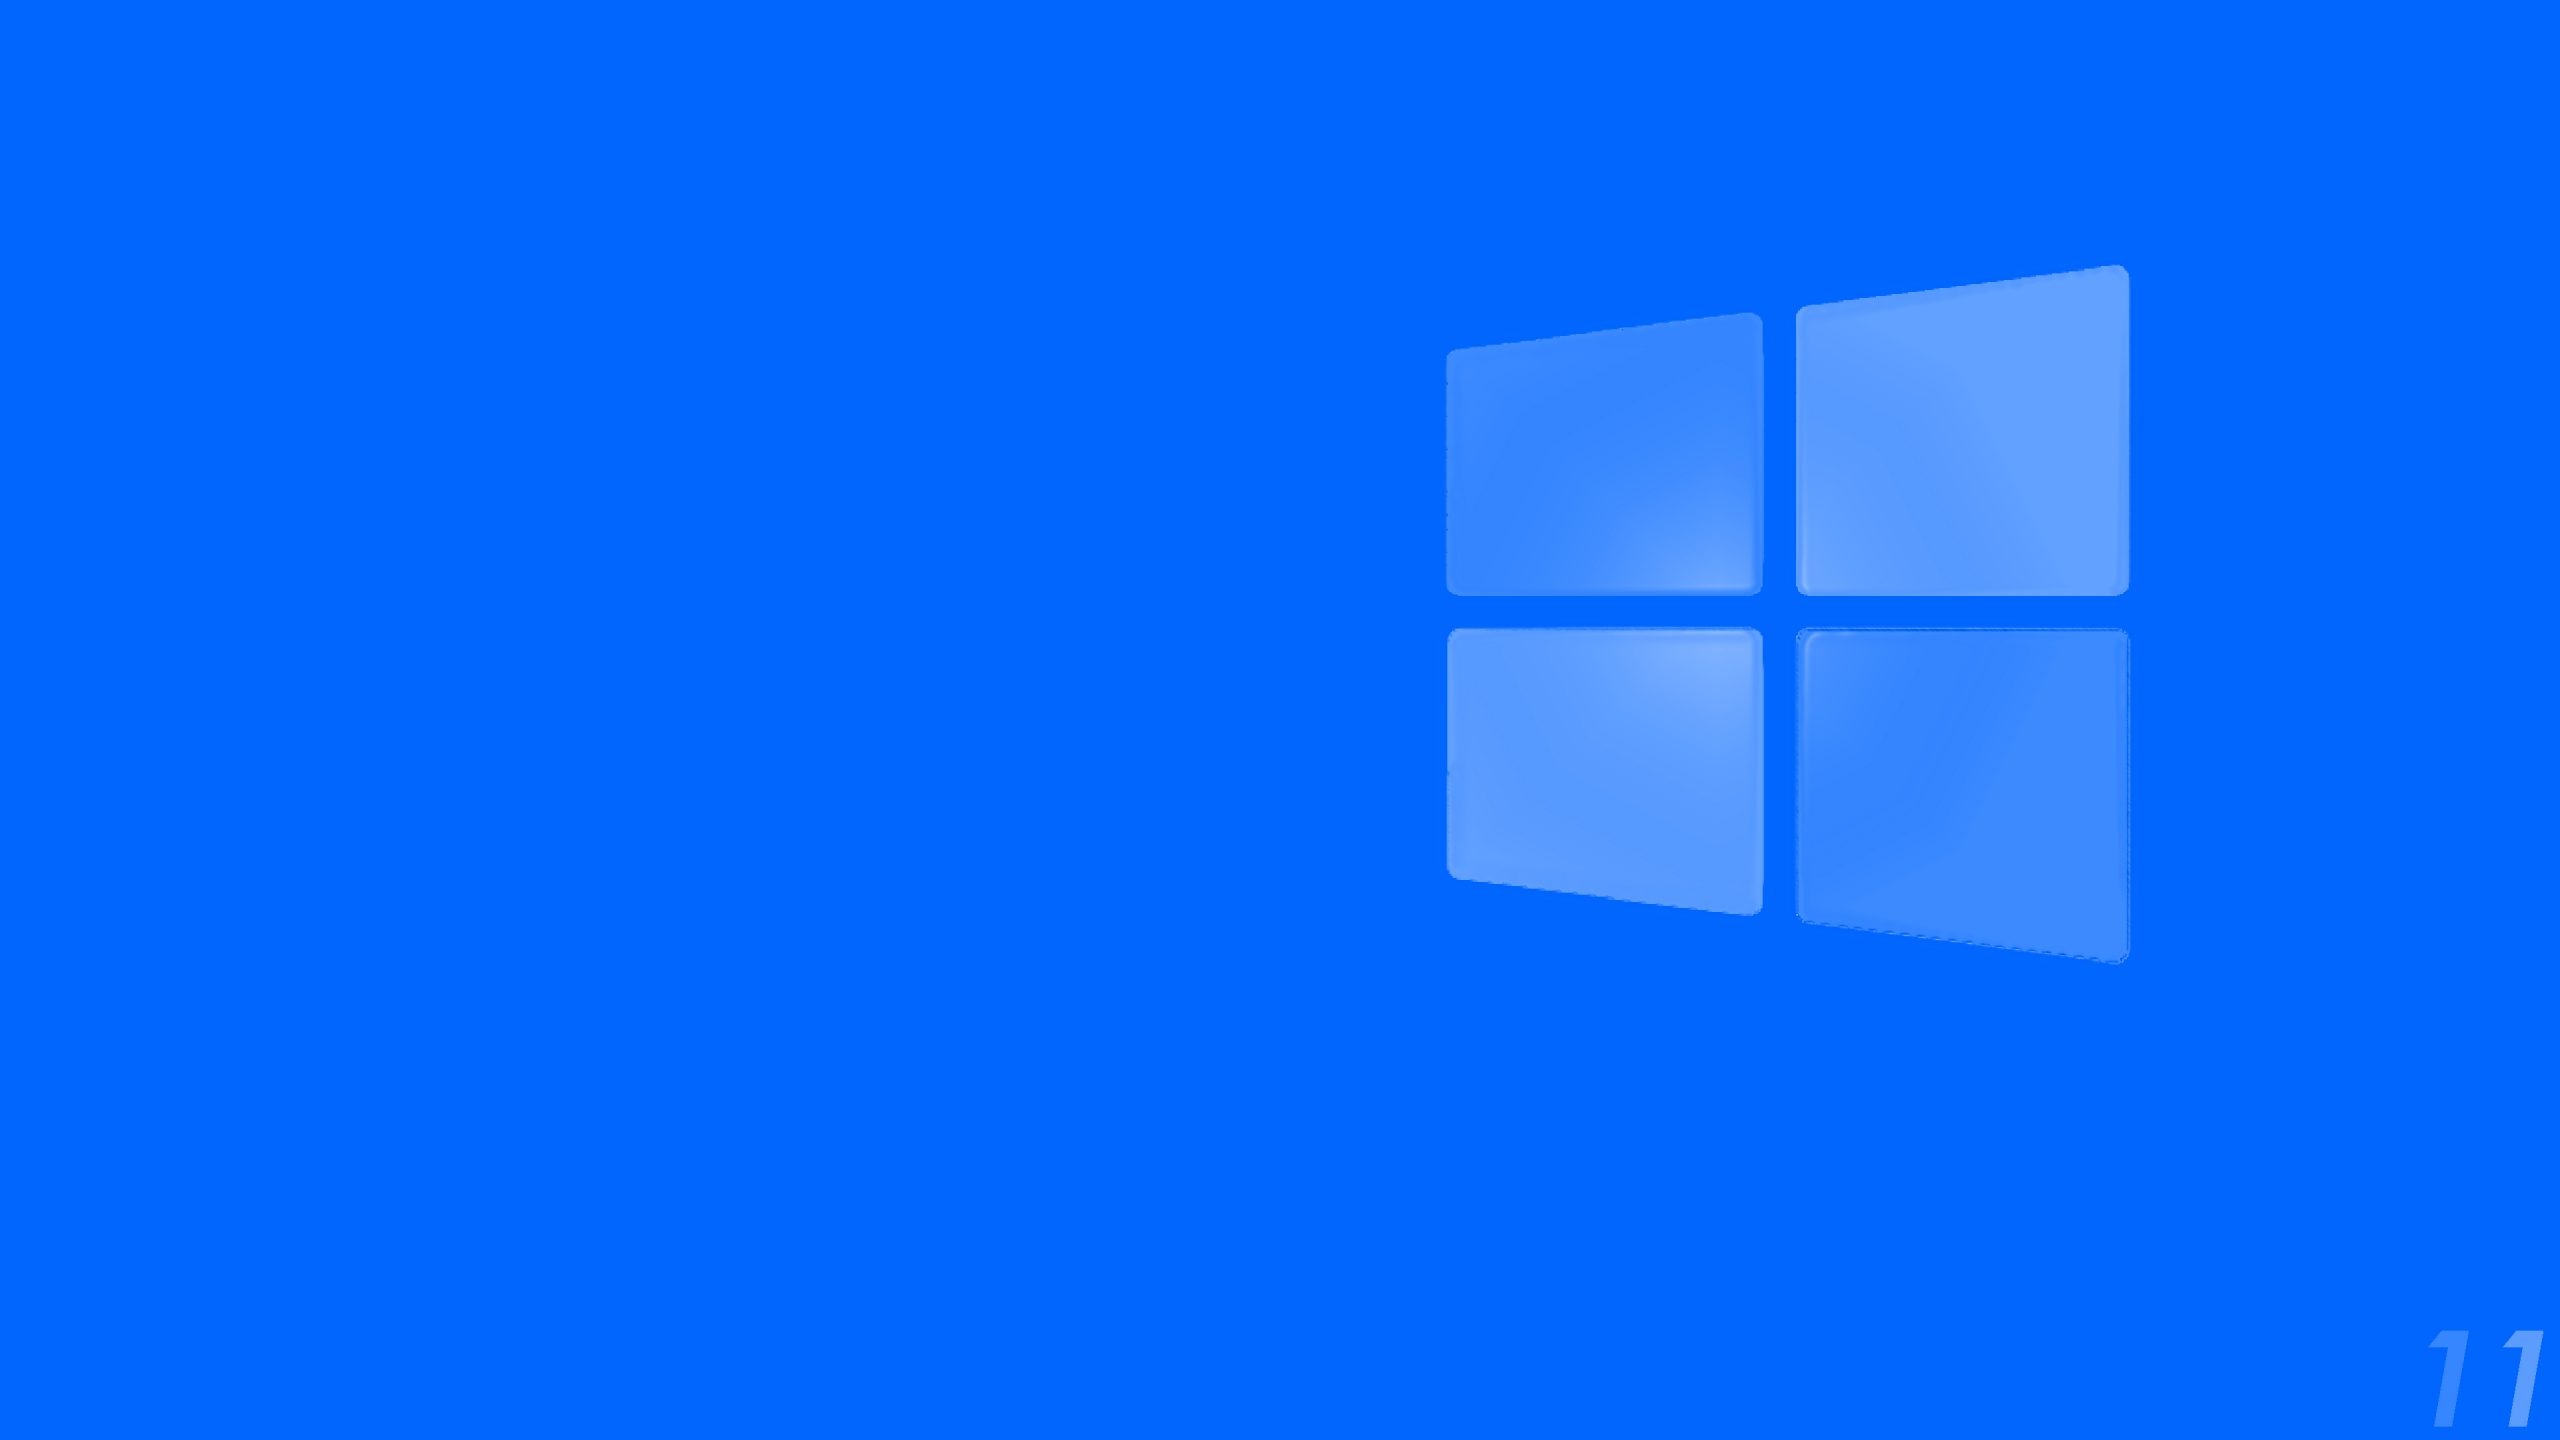 Windows 11 Wallpapers Hd 4k Free Download Pixelstalknet